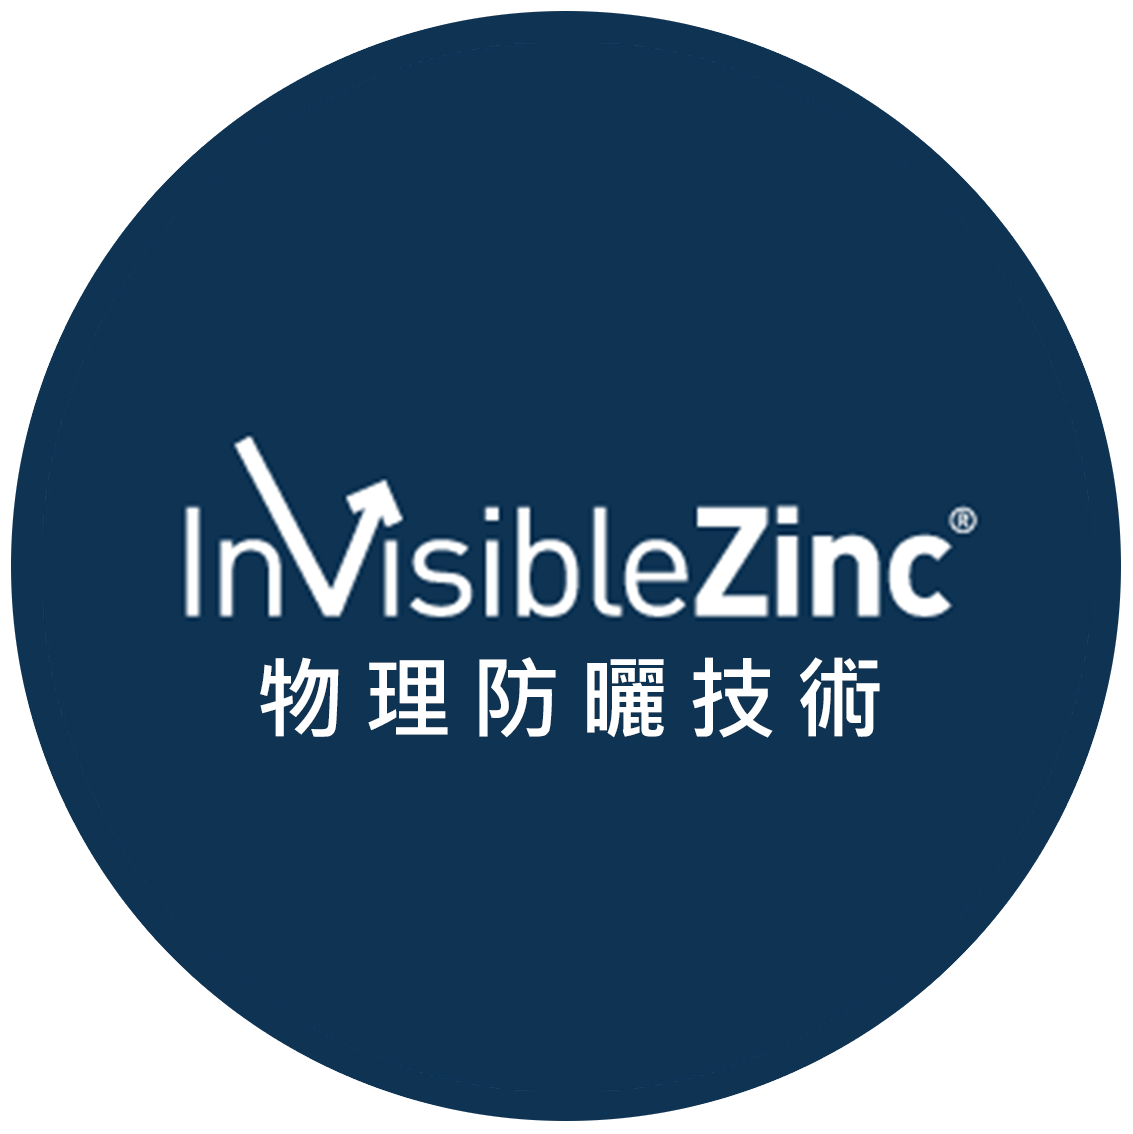 InVisible Zinc TM Technology